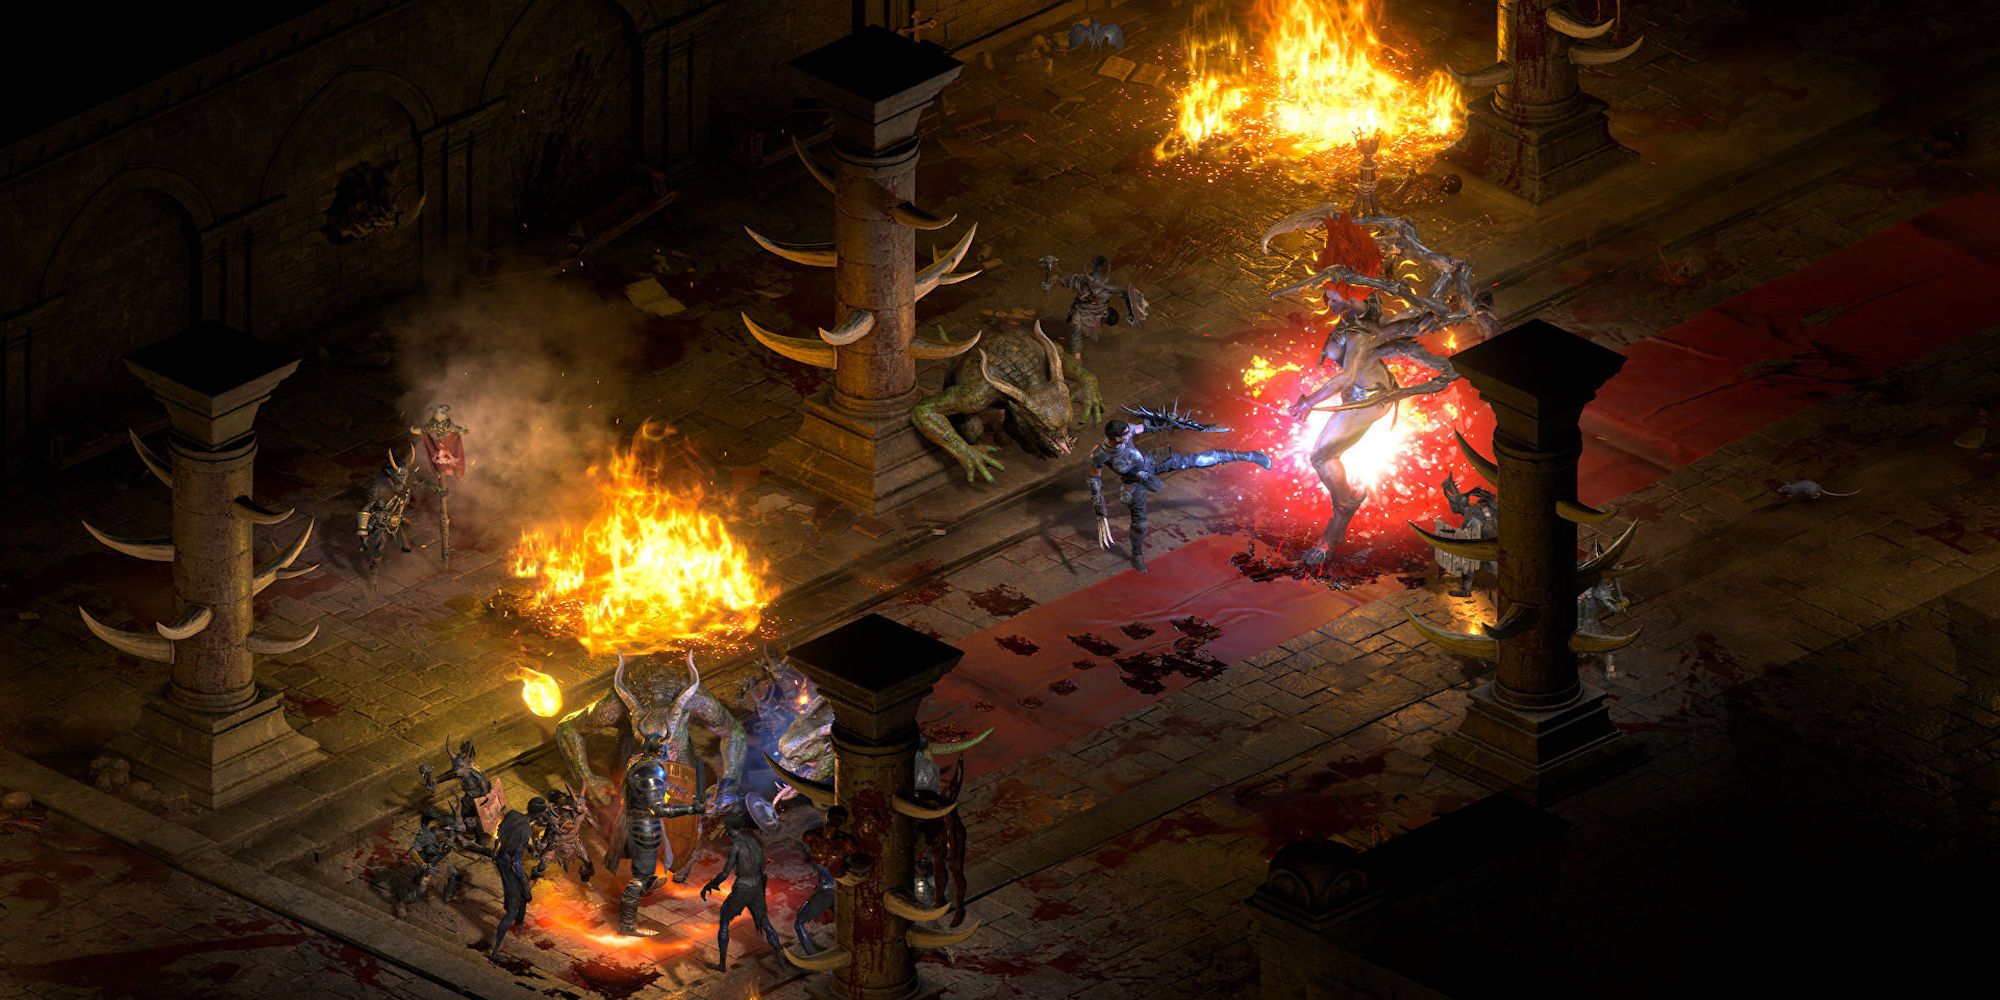 Fighting enemies in Diablo 2 